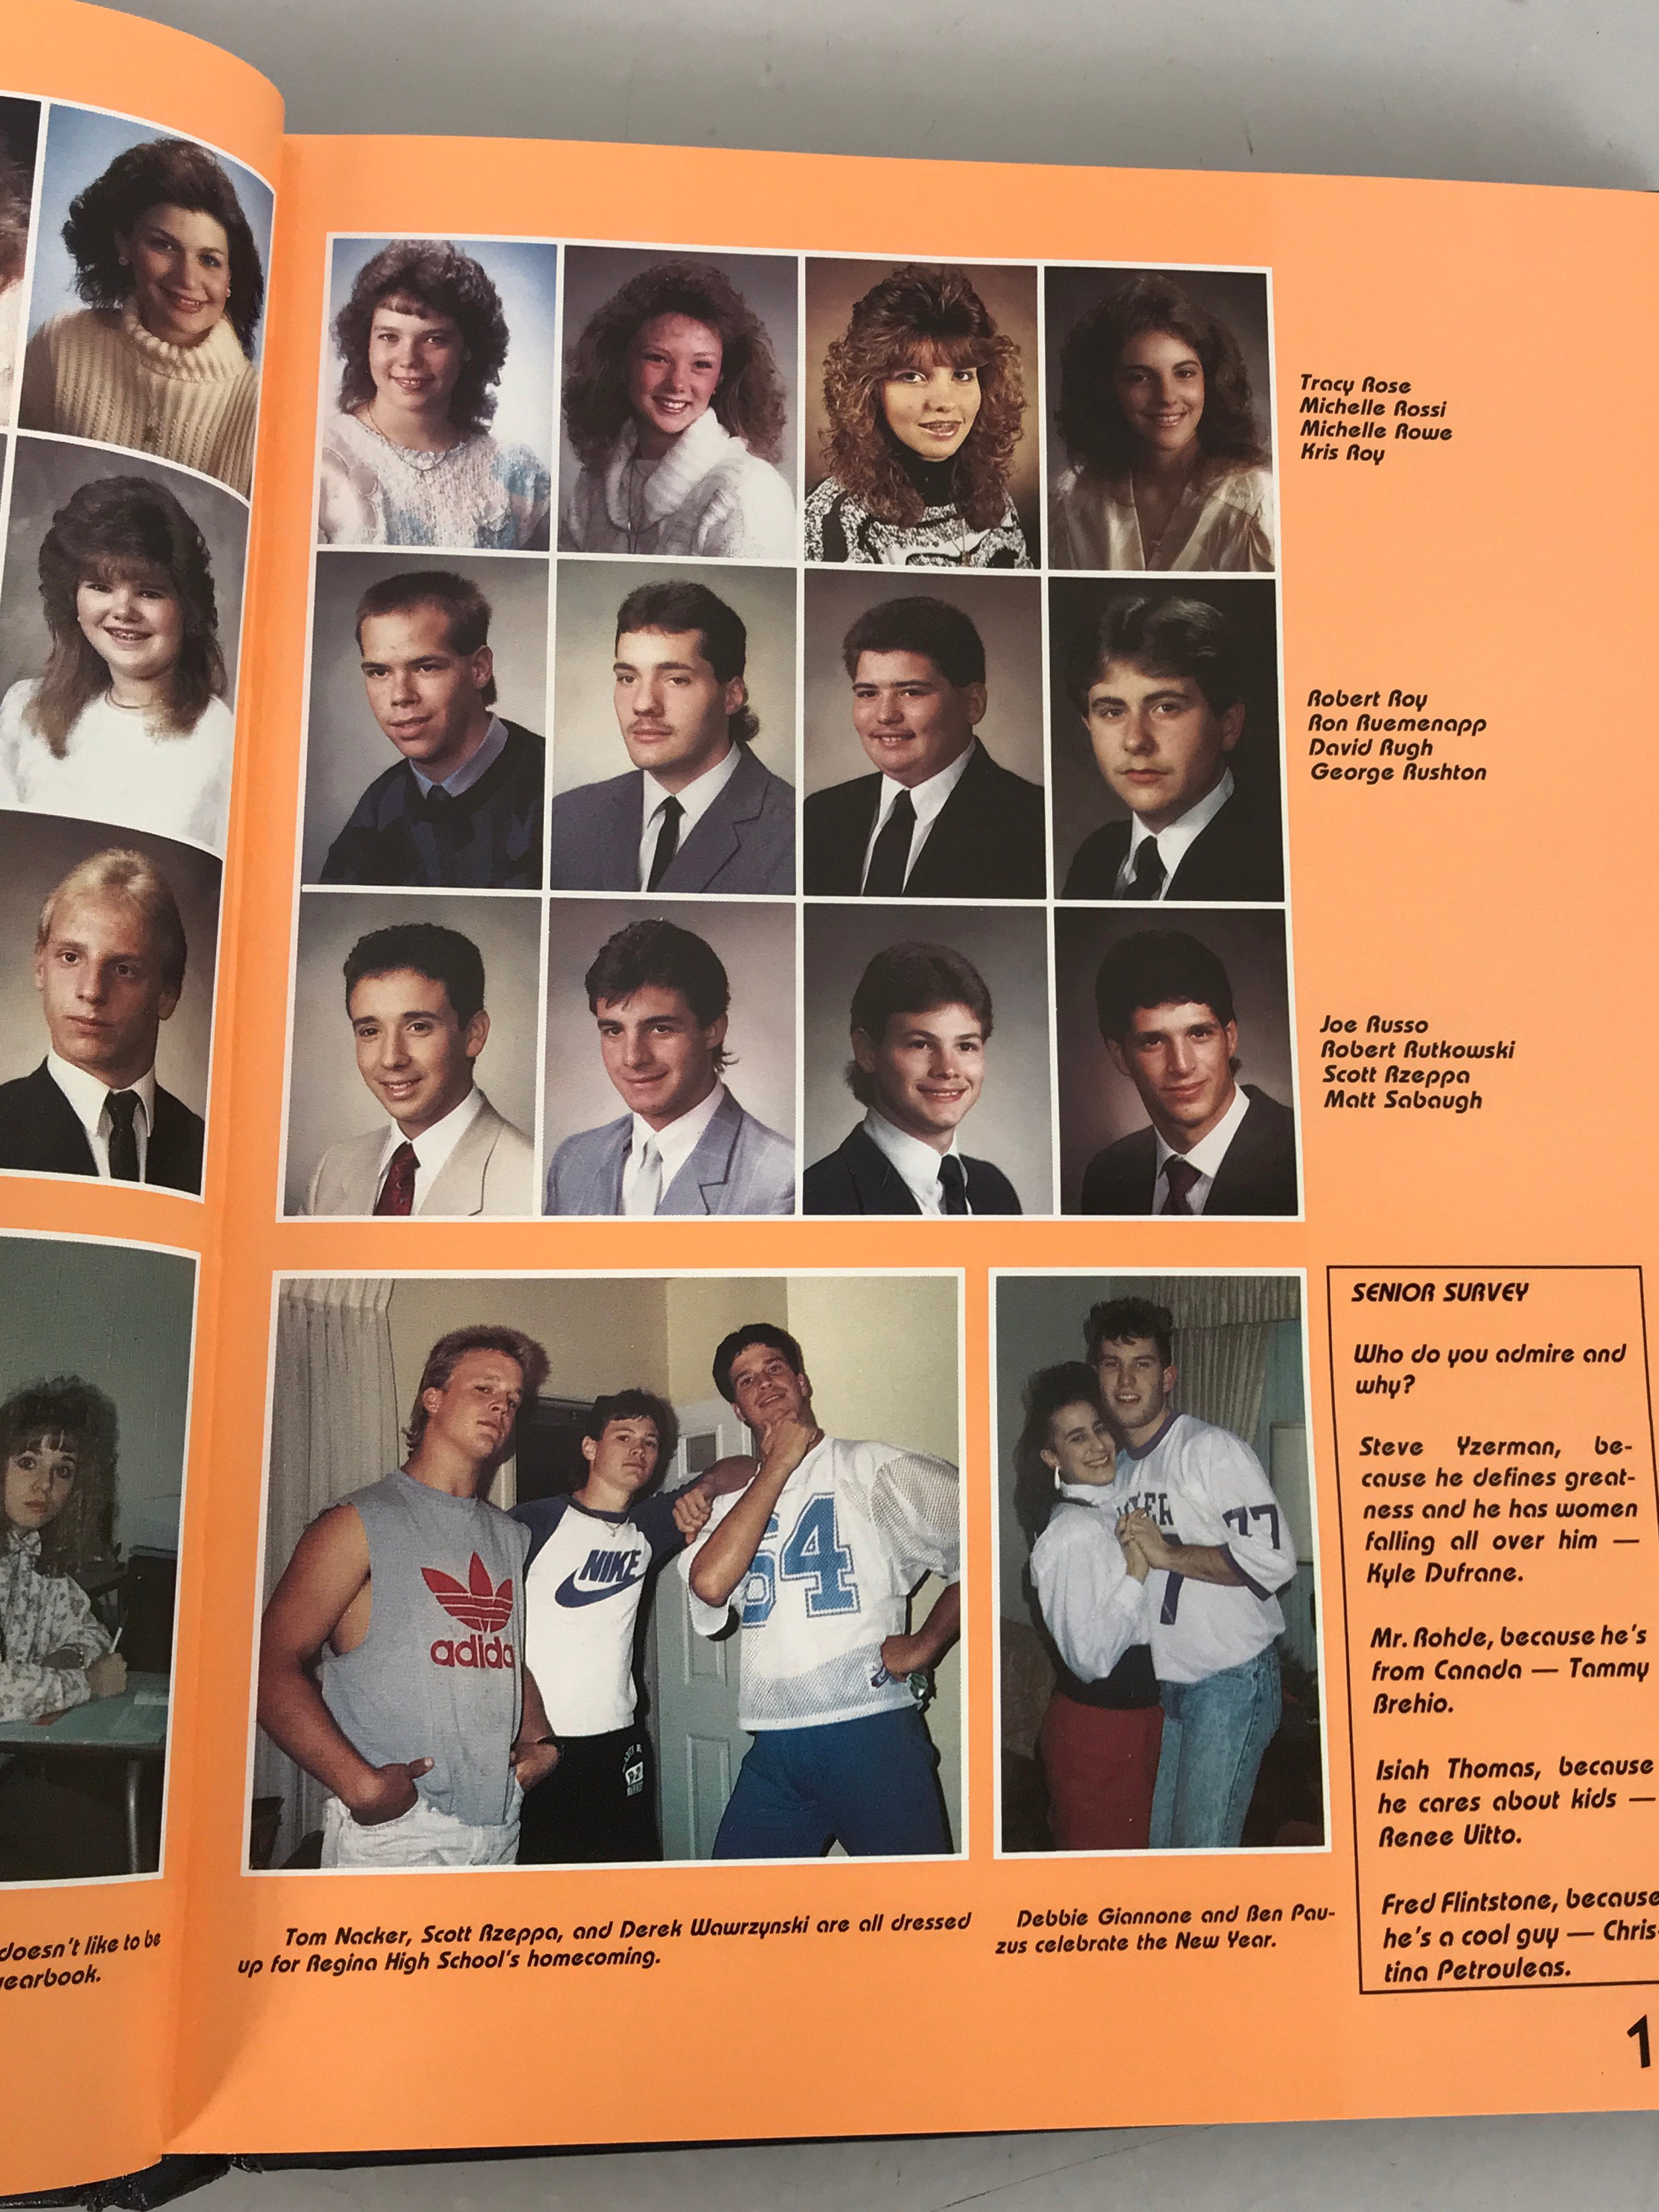 1989 Warren Woods Tower High School Yearbook Warren Michigan HC